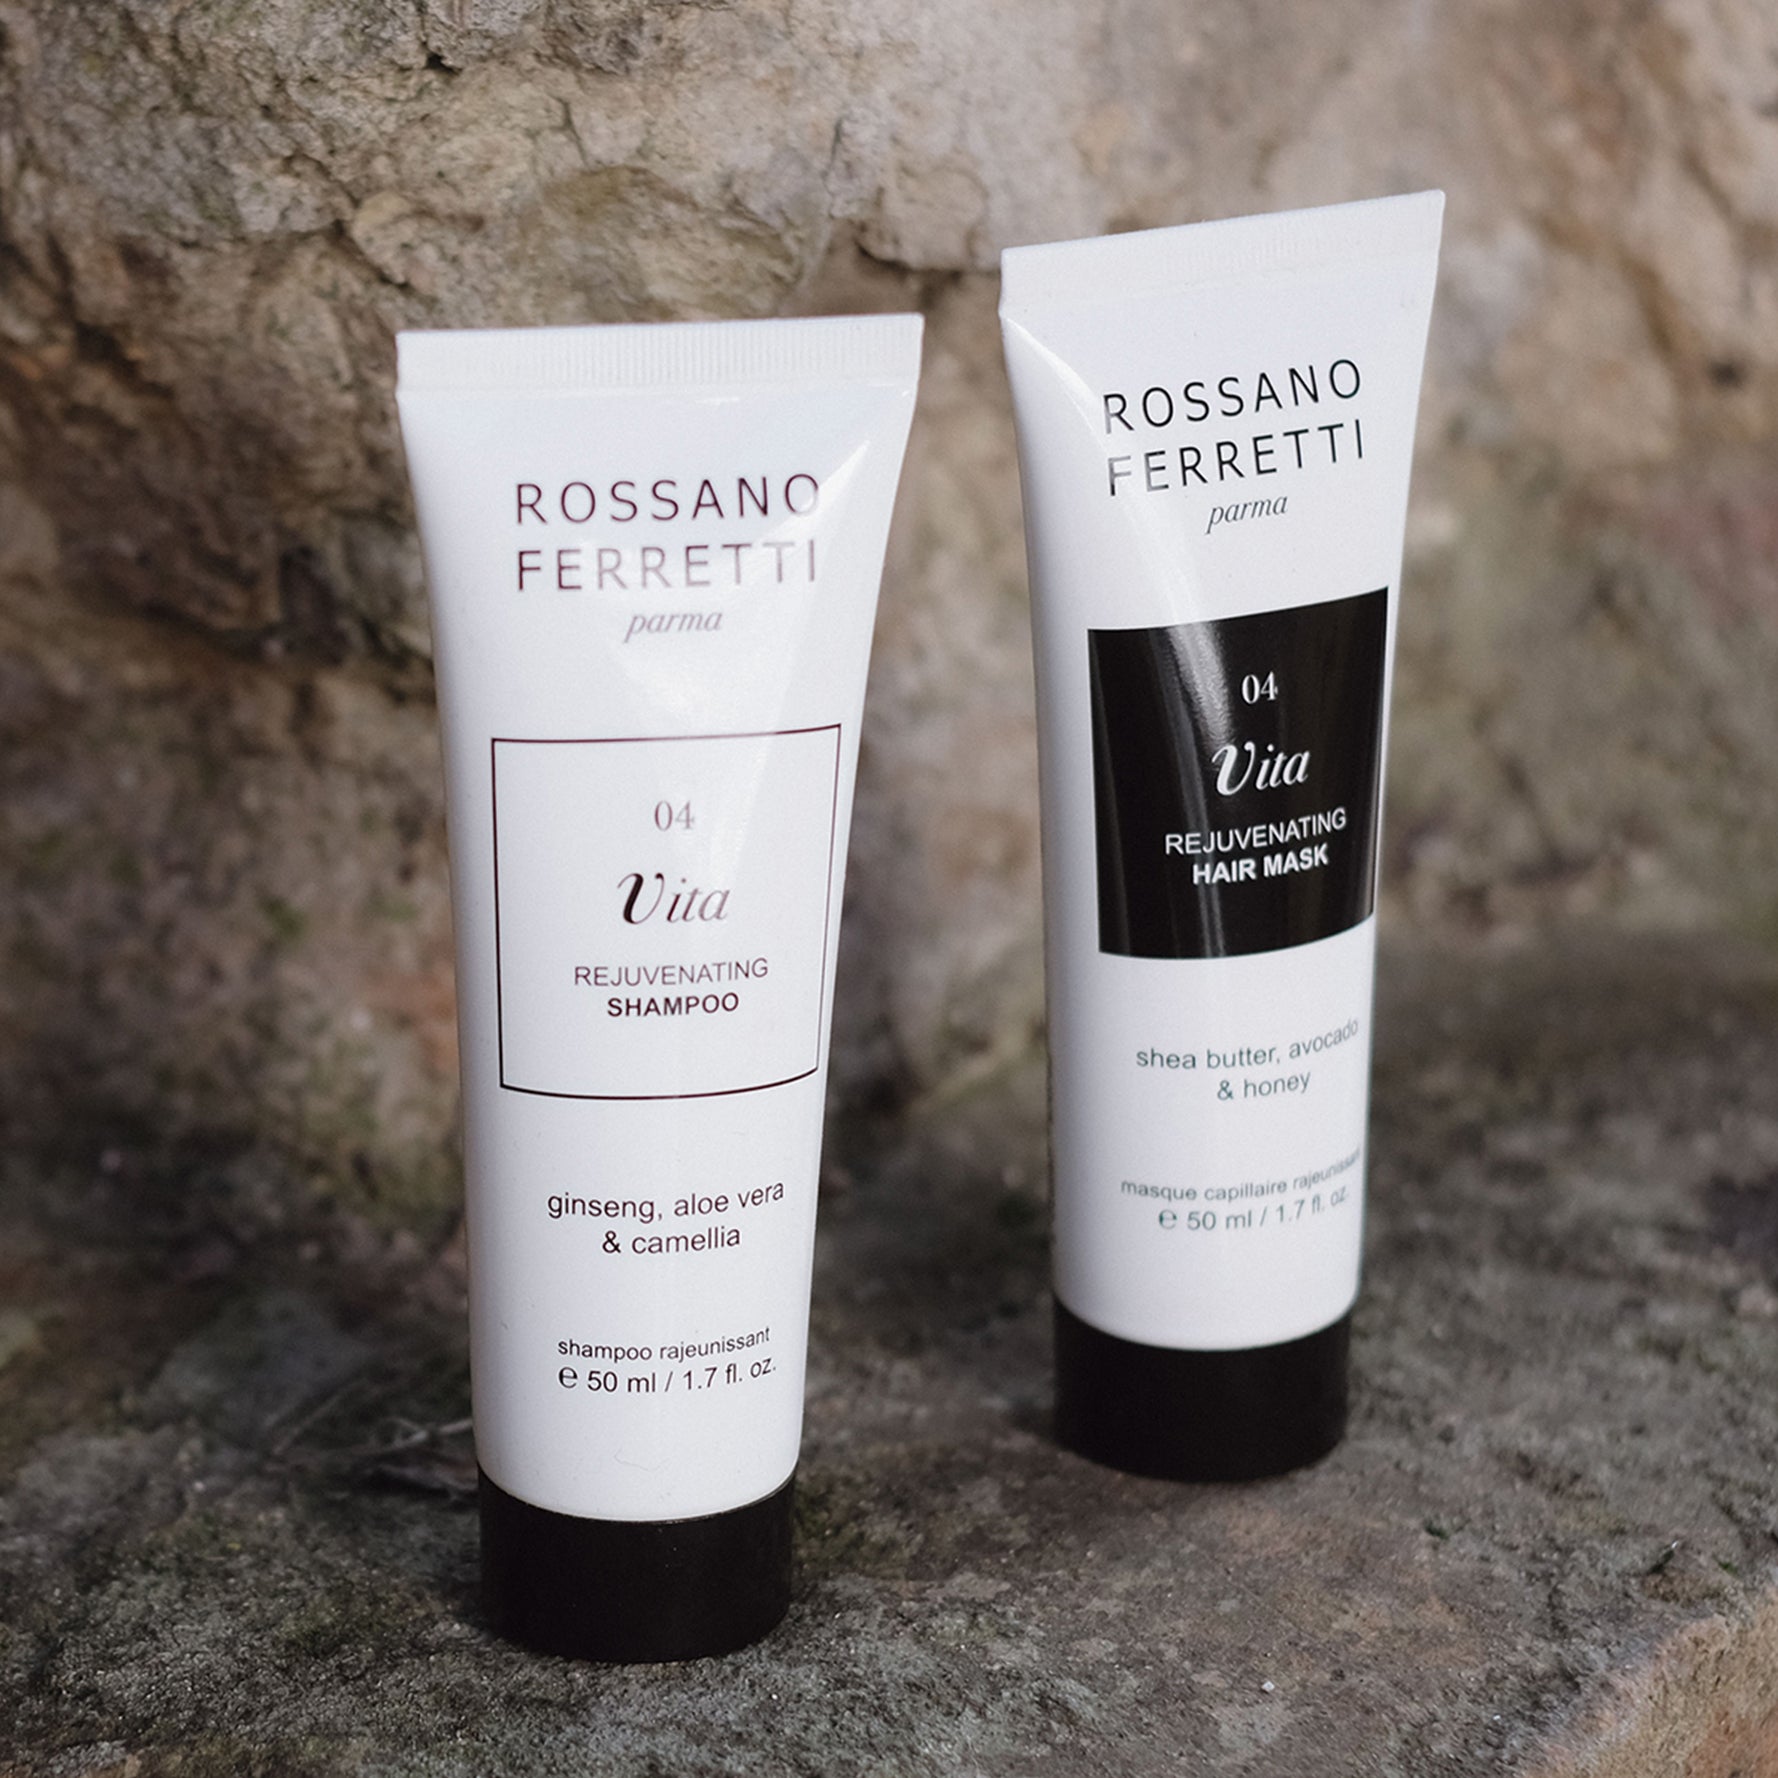 Rossano Ferretti - Vita Rejuvenating Shampoo